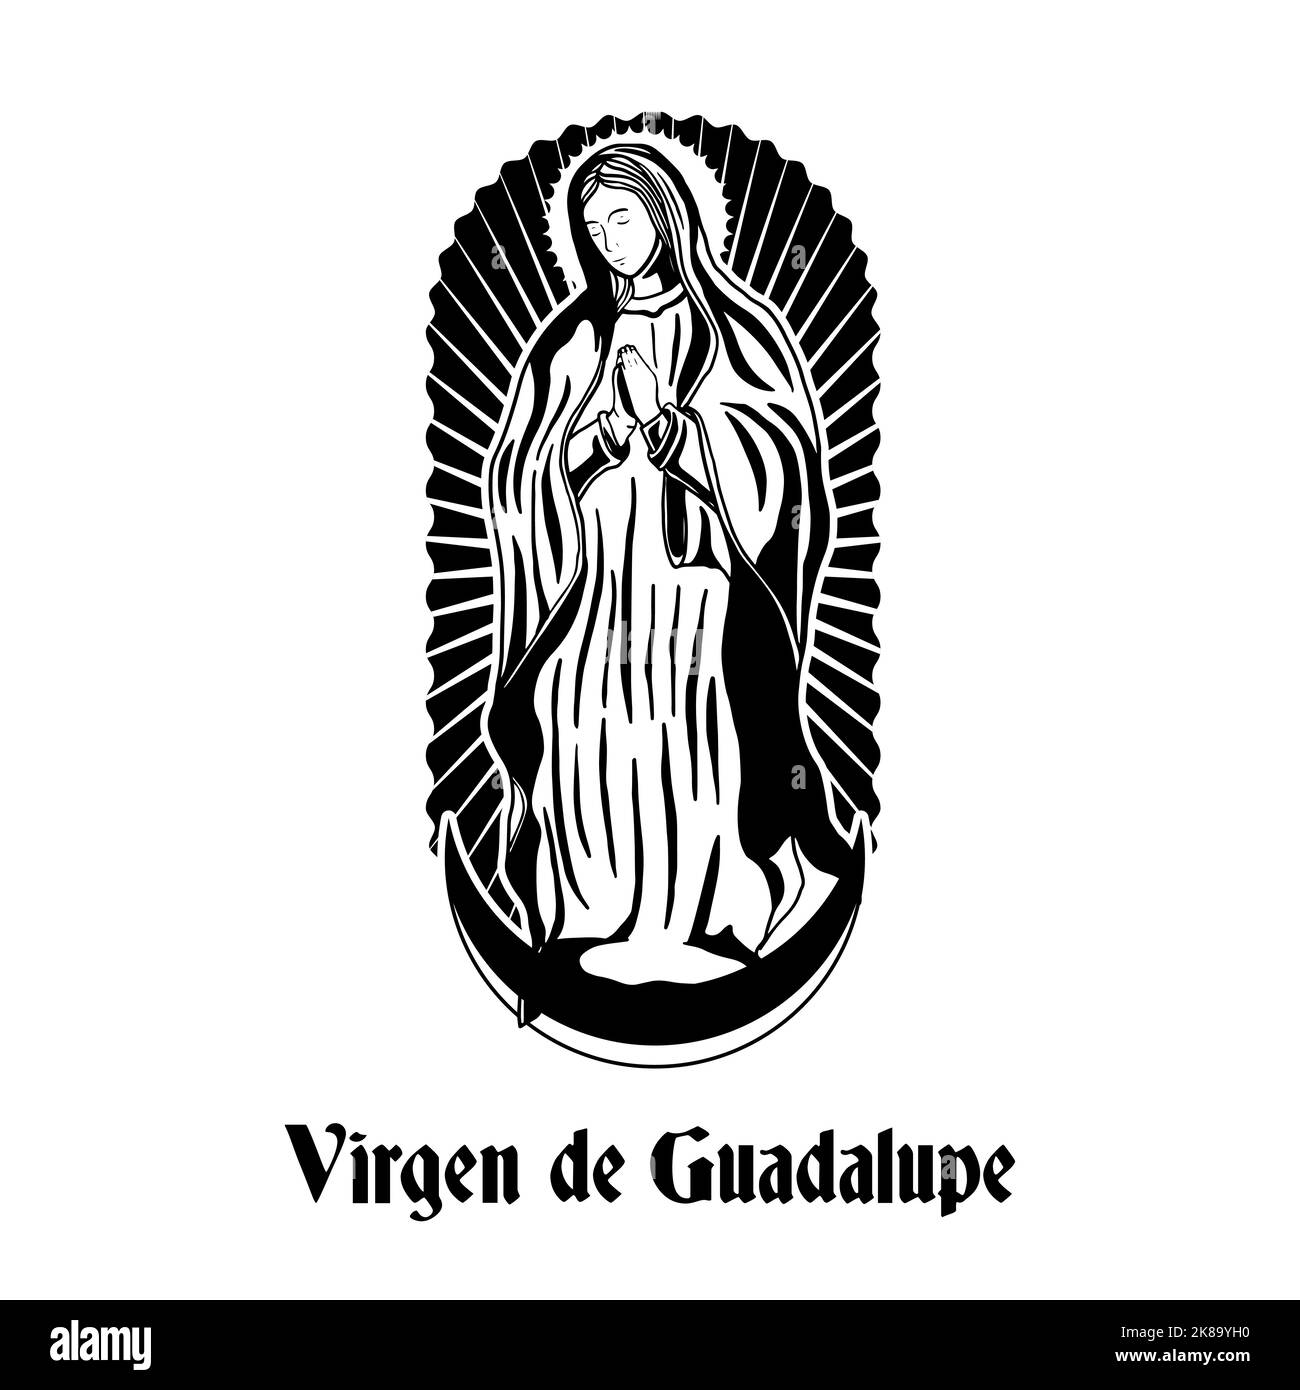 Handgezeichnete illustration der virgen de guadalupe Stock Vektor